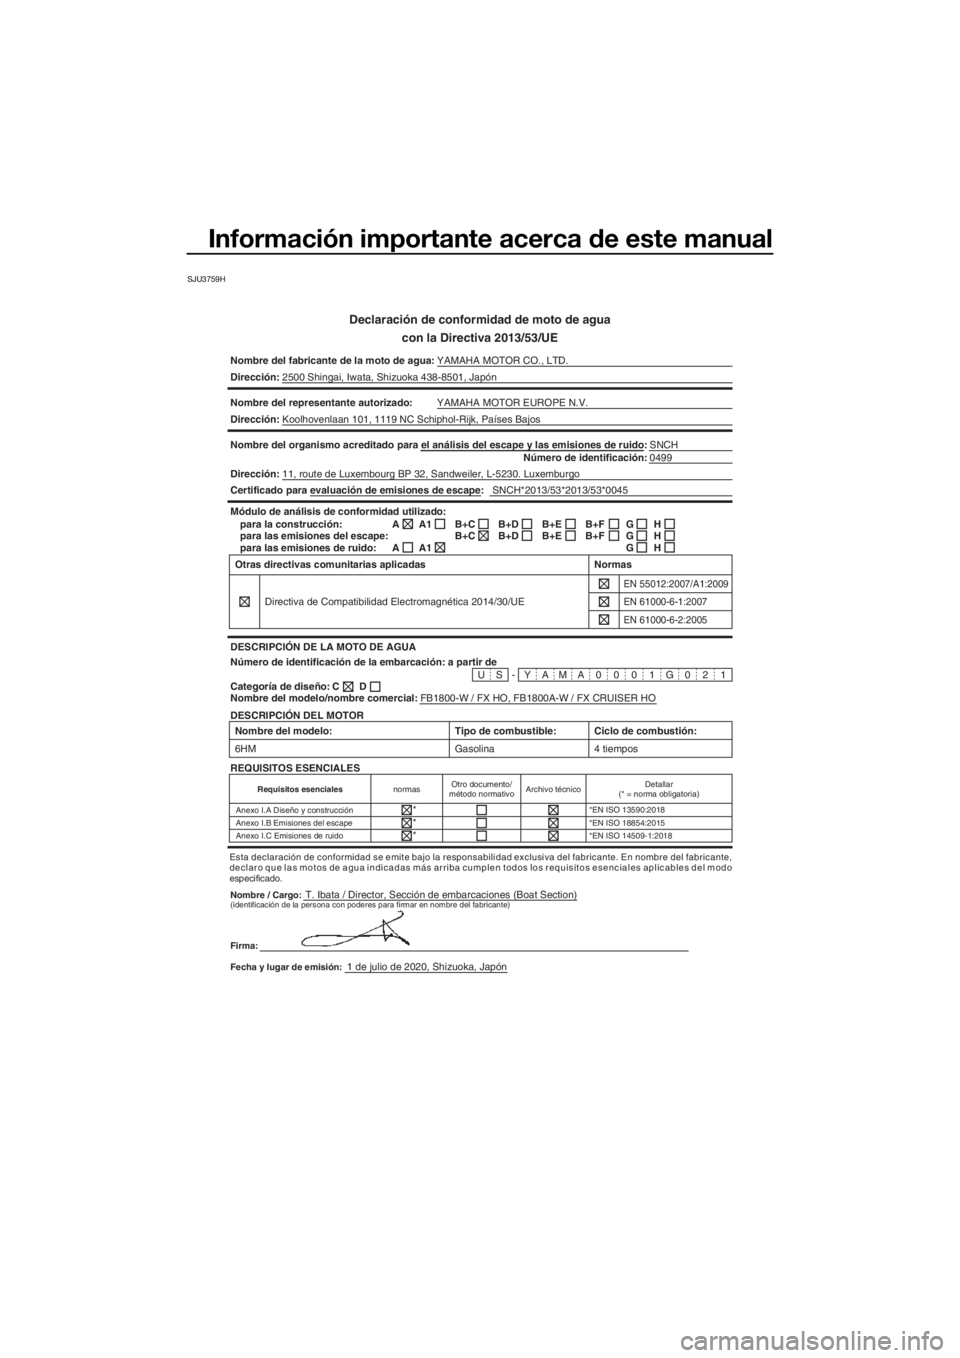 YAMAHA FX HO 2021  Manuale de Empleo (in Spanish) Información importante acerca de este manual
SJU3759H
Declaración de conformidad de moto de agua
con la Directiva 2013/53/UE
Nombre del fabricante de la moto de a gua:YAMAHA MOTOR CO., LTD.
Direcci�